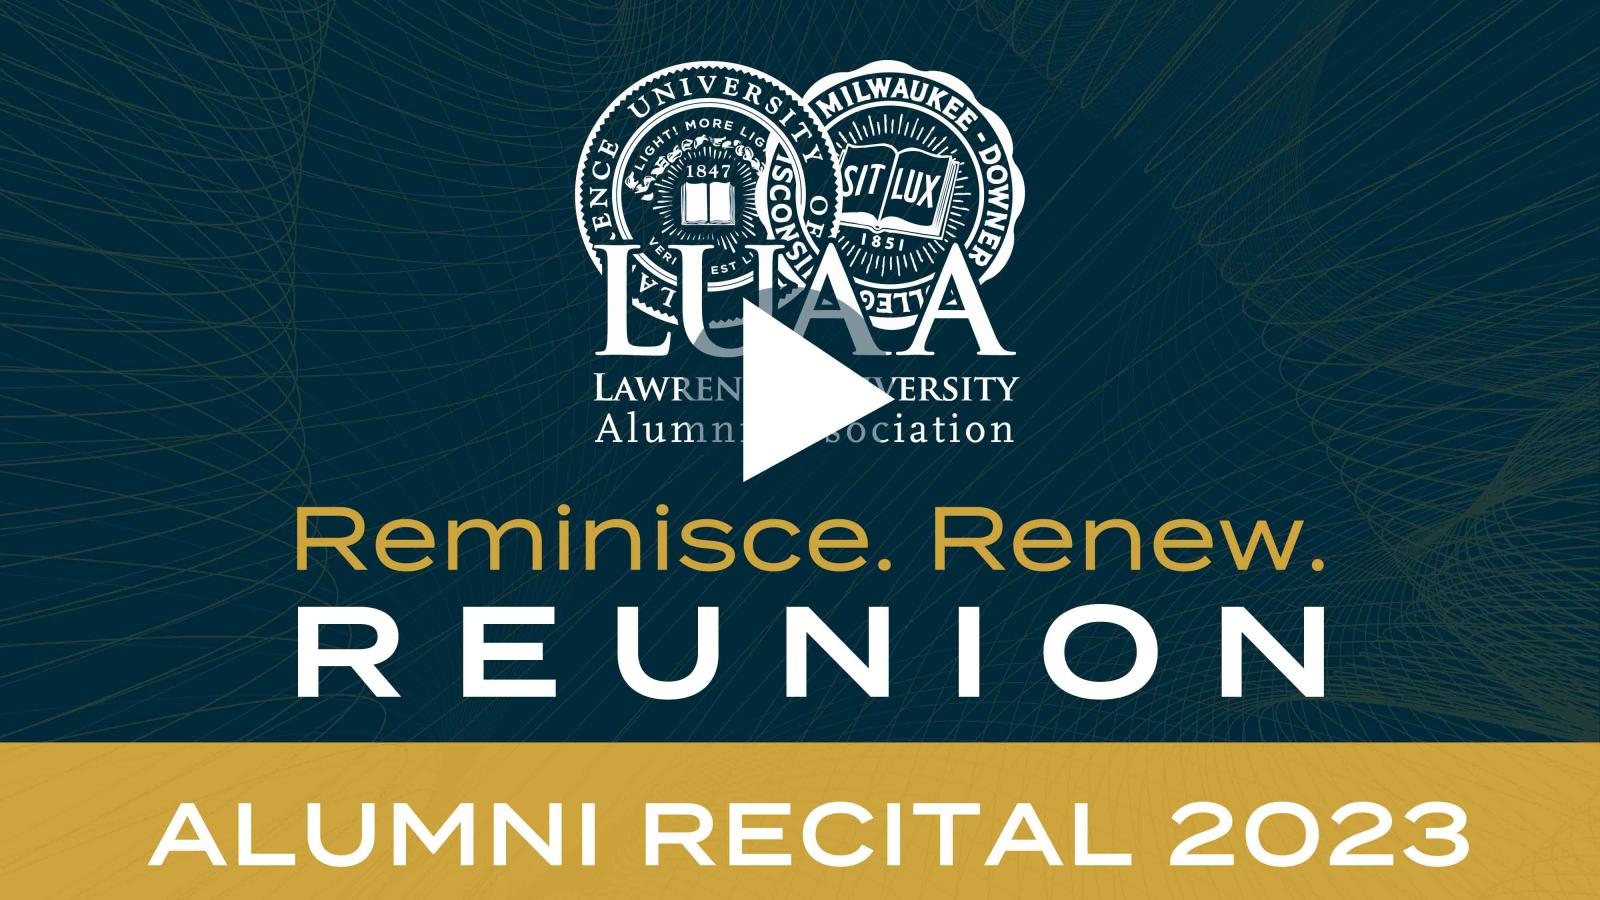 Alumni Recital 2023 thumbnail